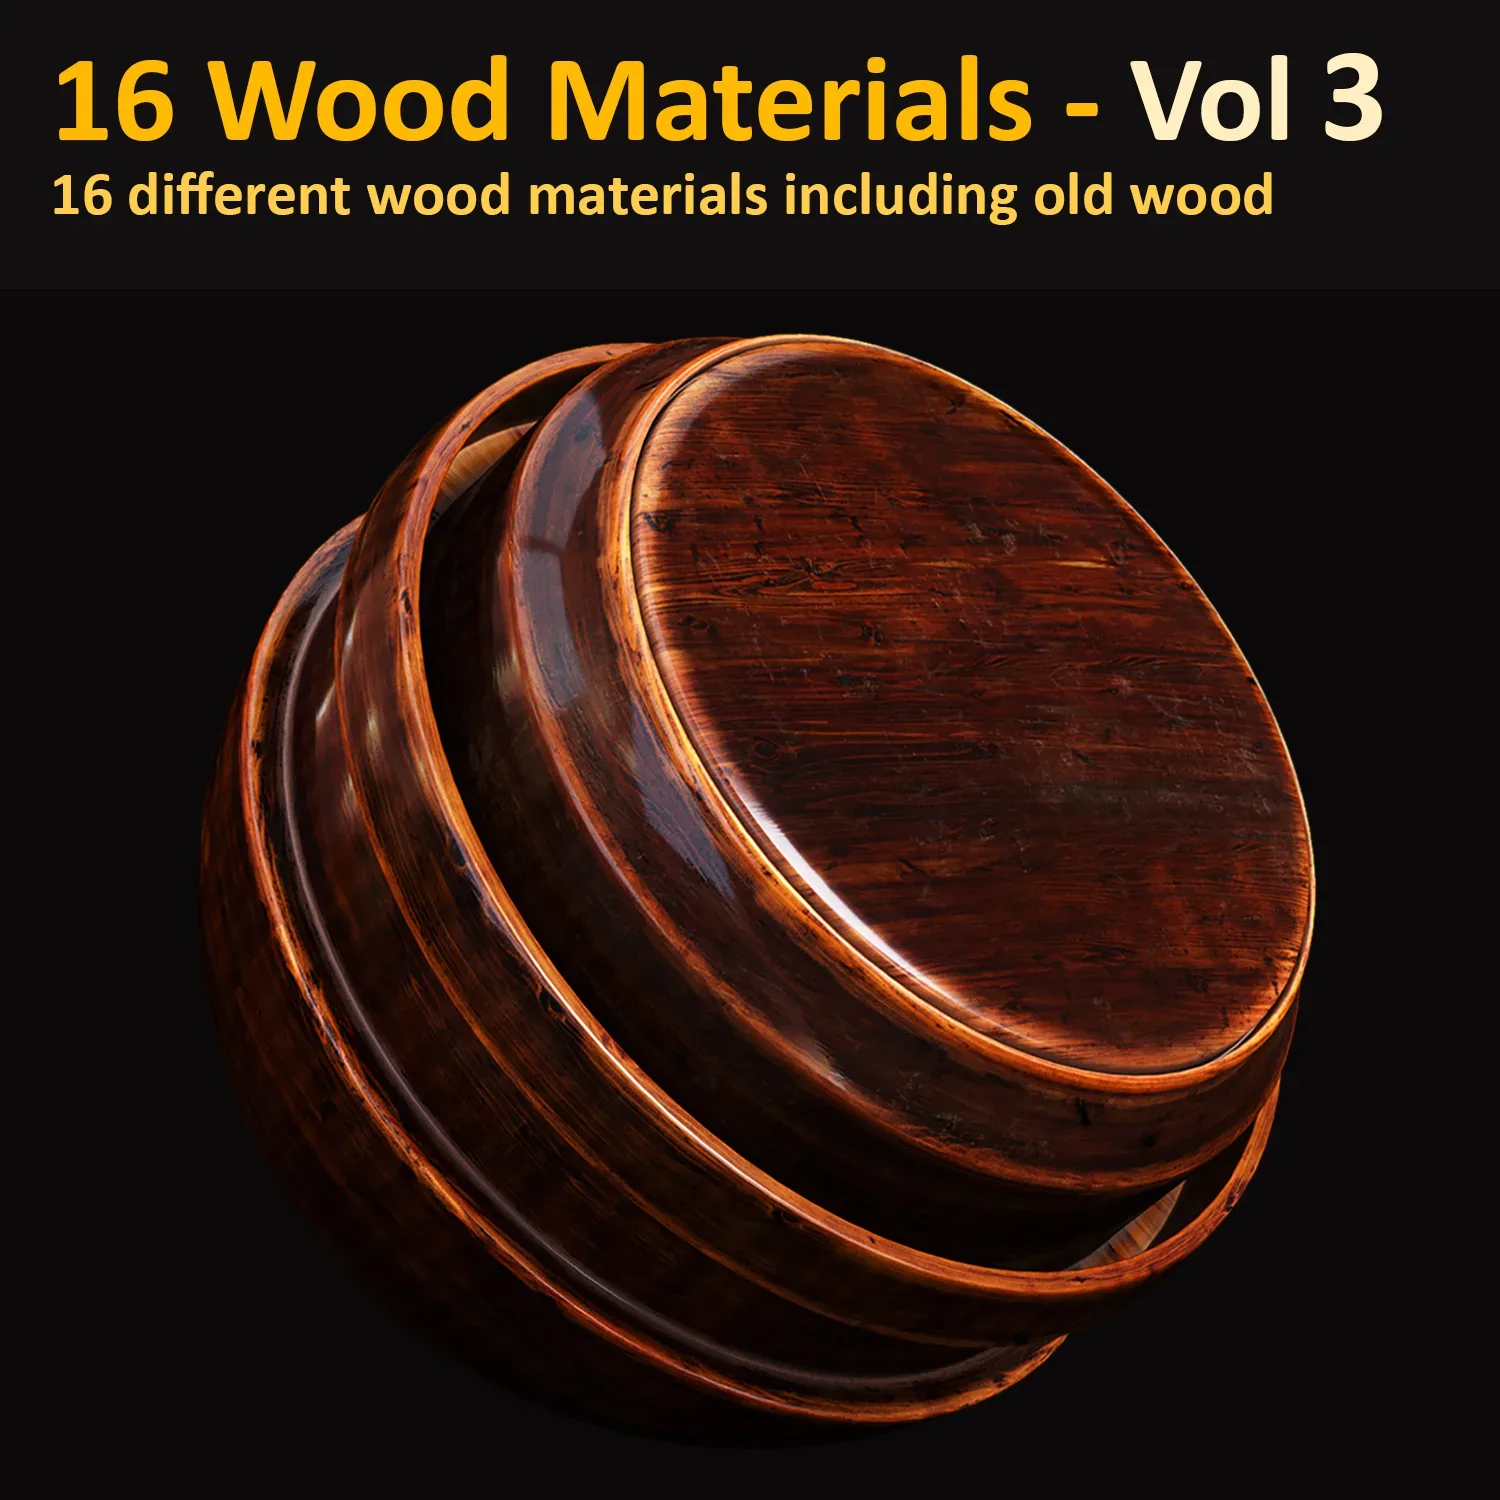 16 Wood Materials Vol 3